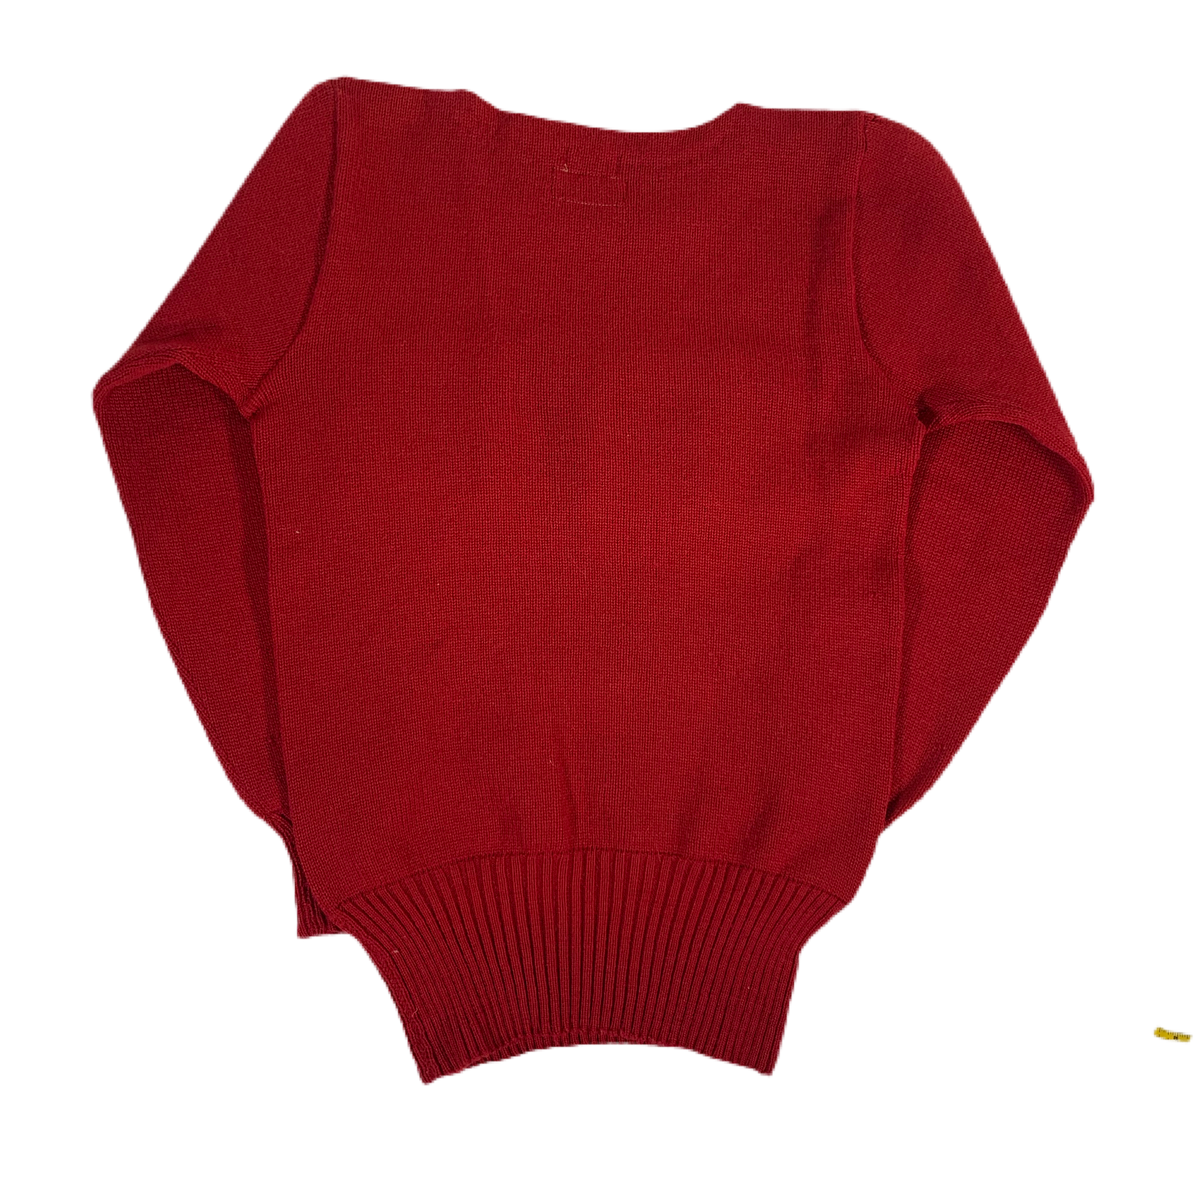 Vintage Harvard University “1938” Knit Sweater - jointcustodydc